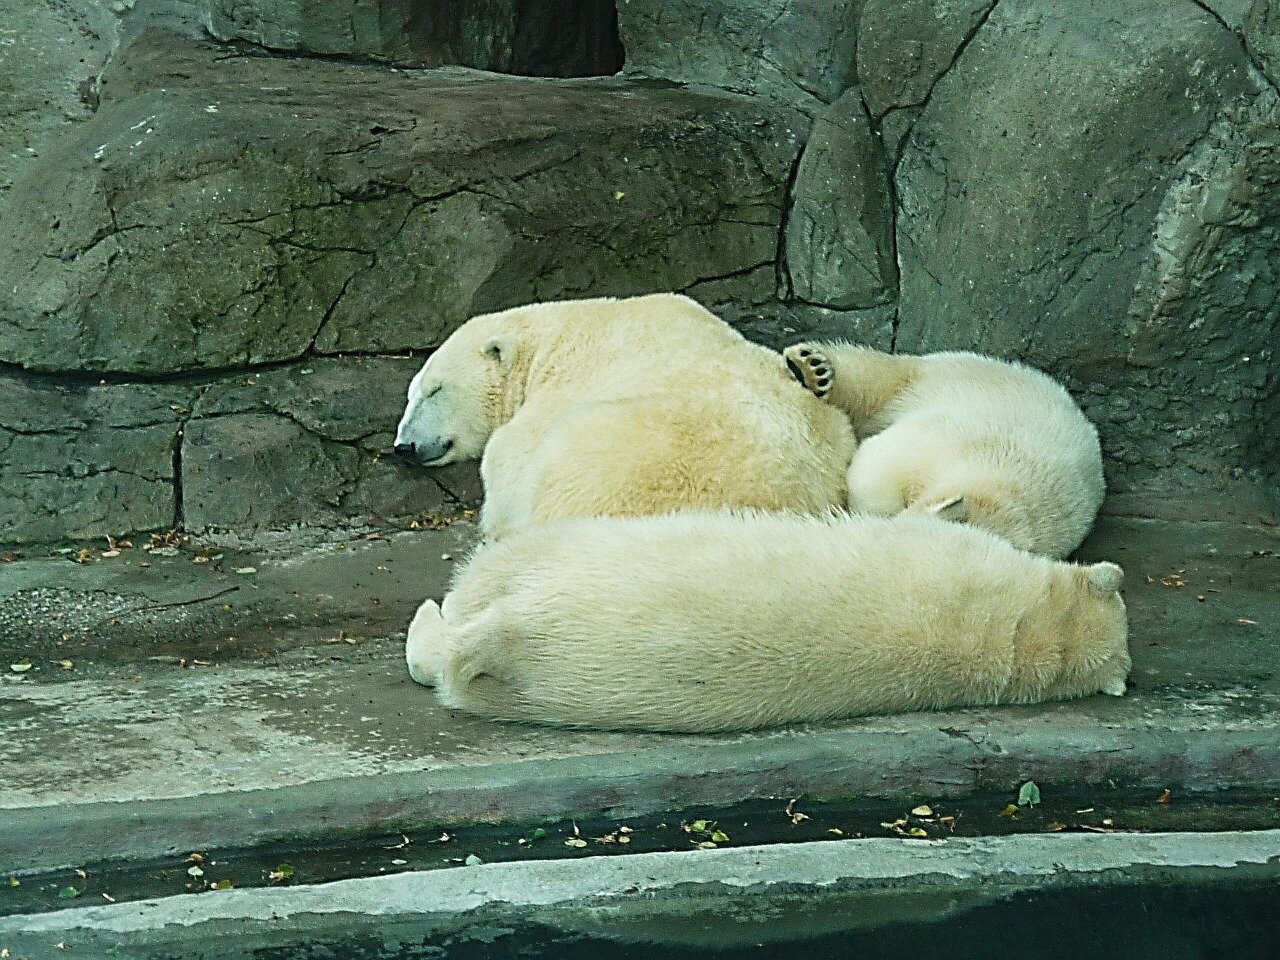 Trzy białe niedźwiedzie śpią w jaskini. Są do siebie przytulone.